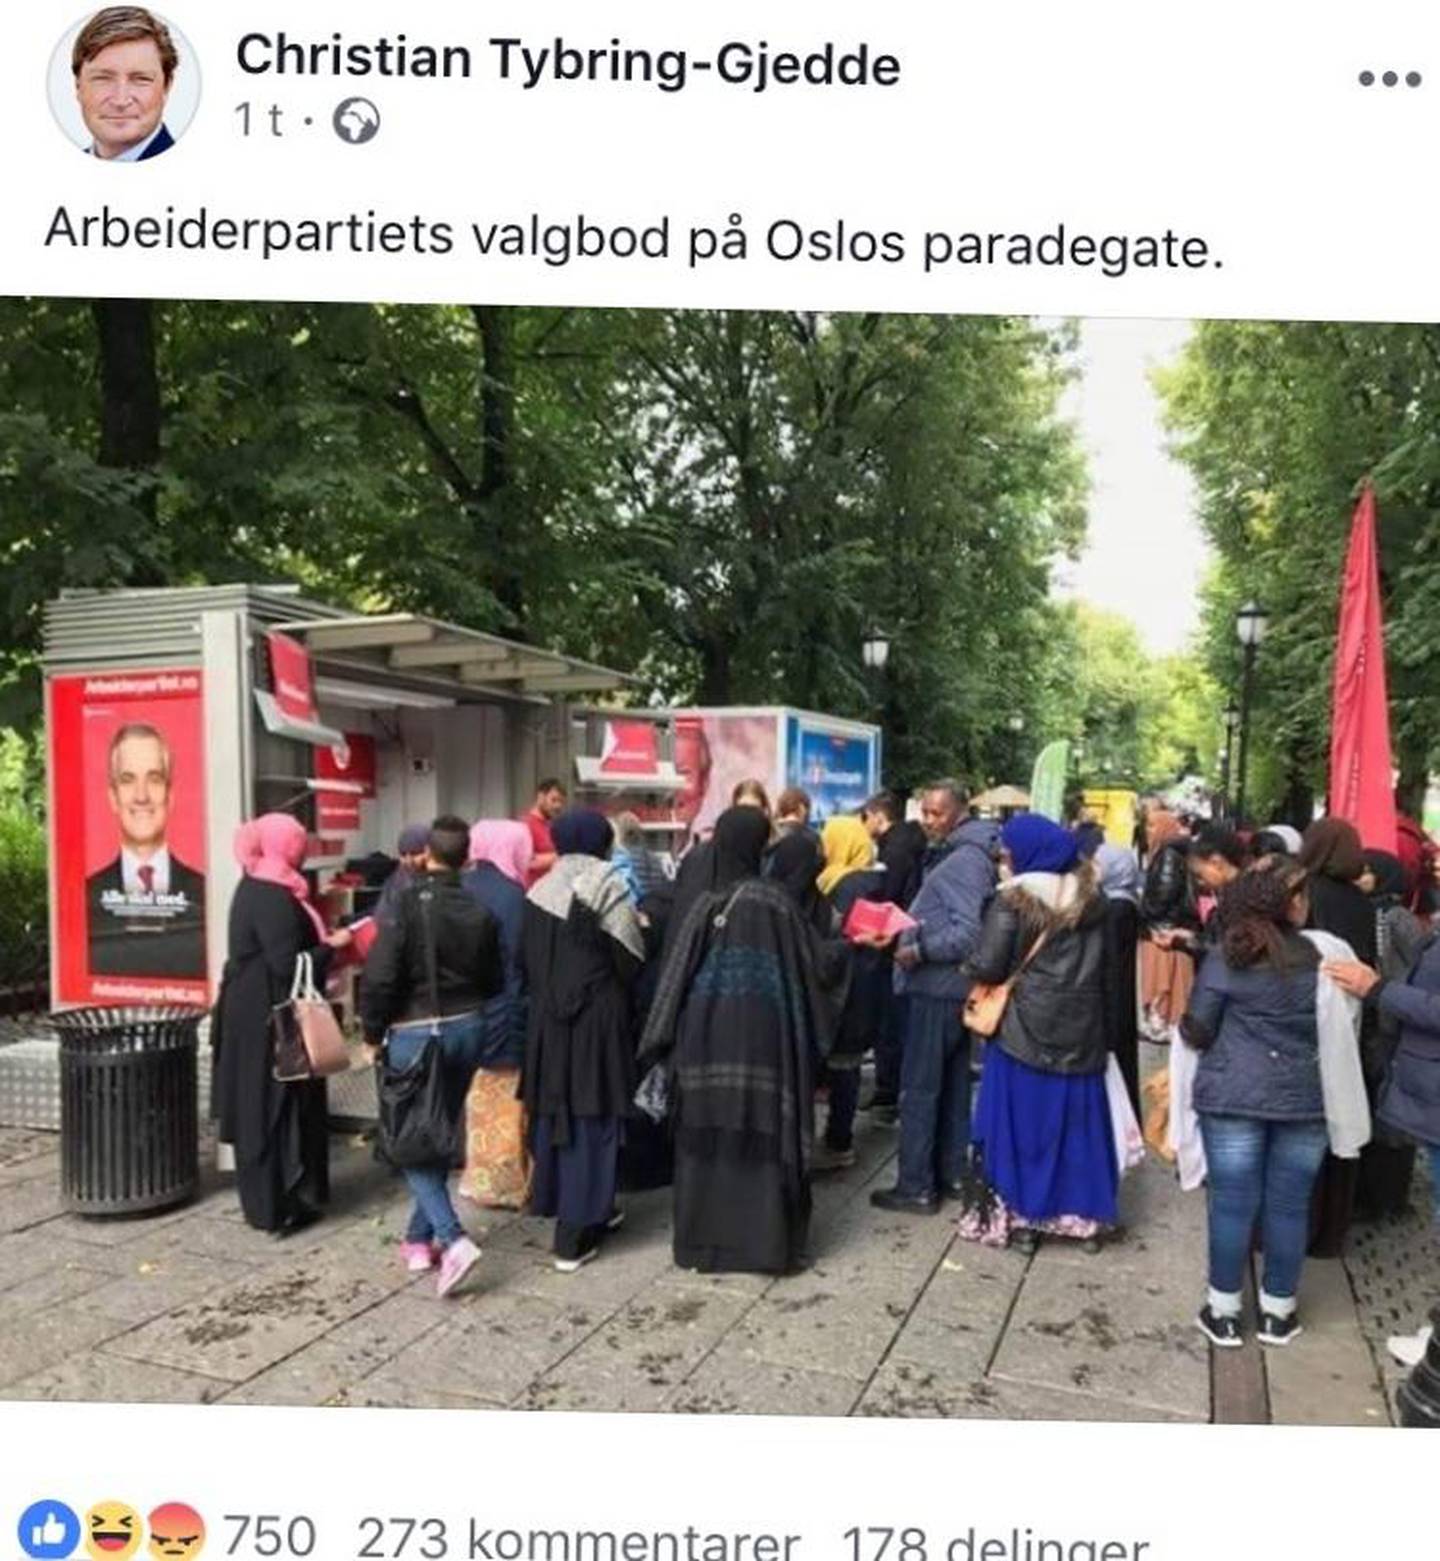 Christian Tybring-Gjedde postet dette bildet av Aps valgbod. Mange mener han nører opp under konspirasjonsteorier om at partiet vil islamisere Norge.